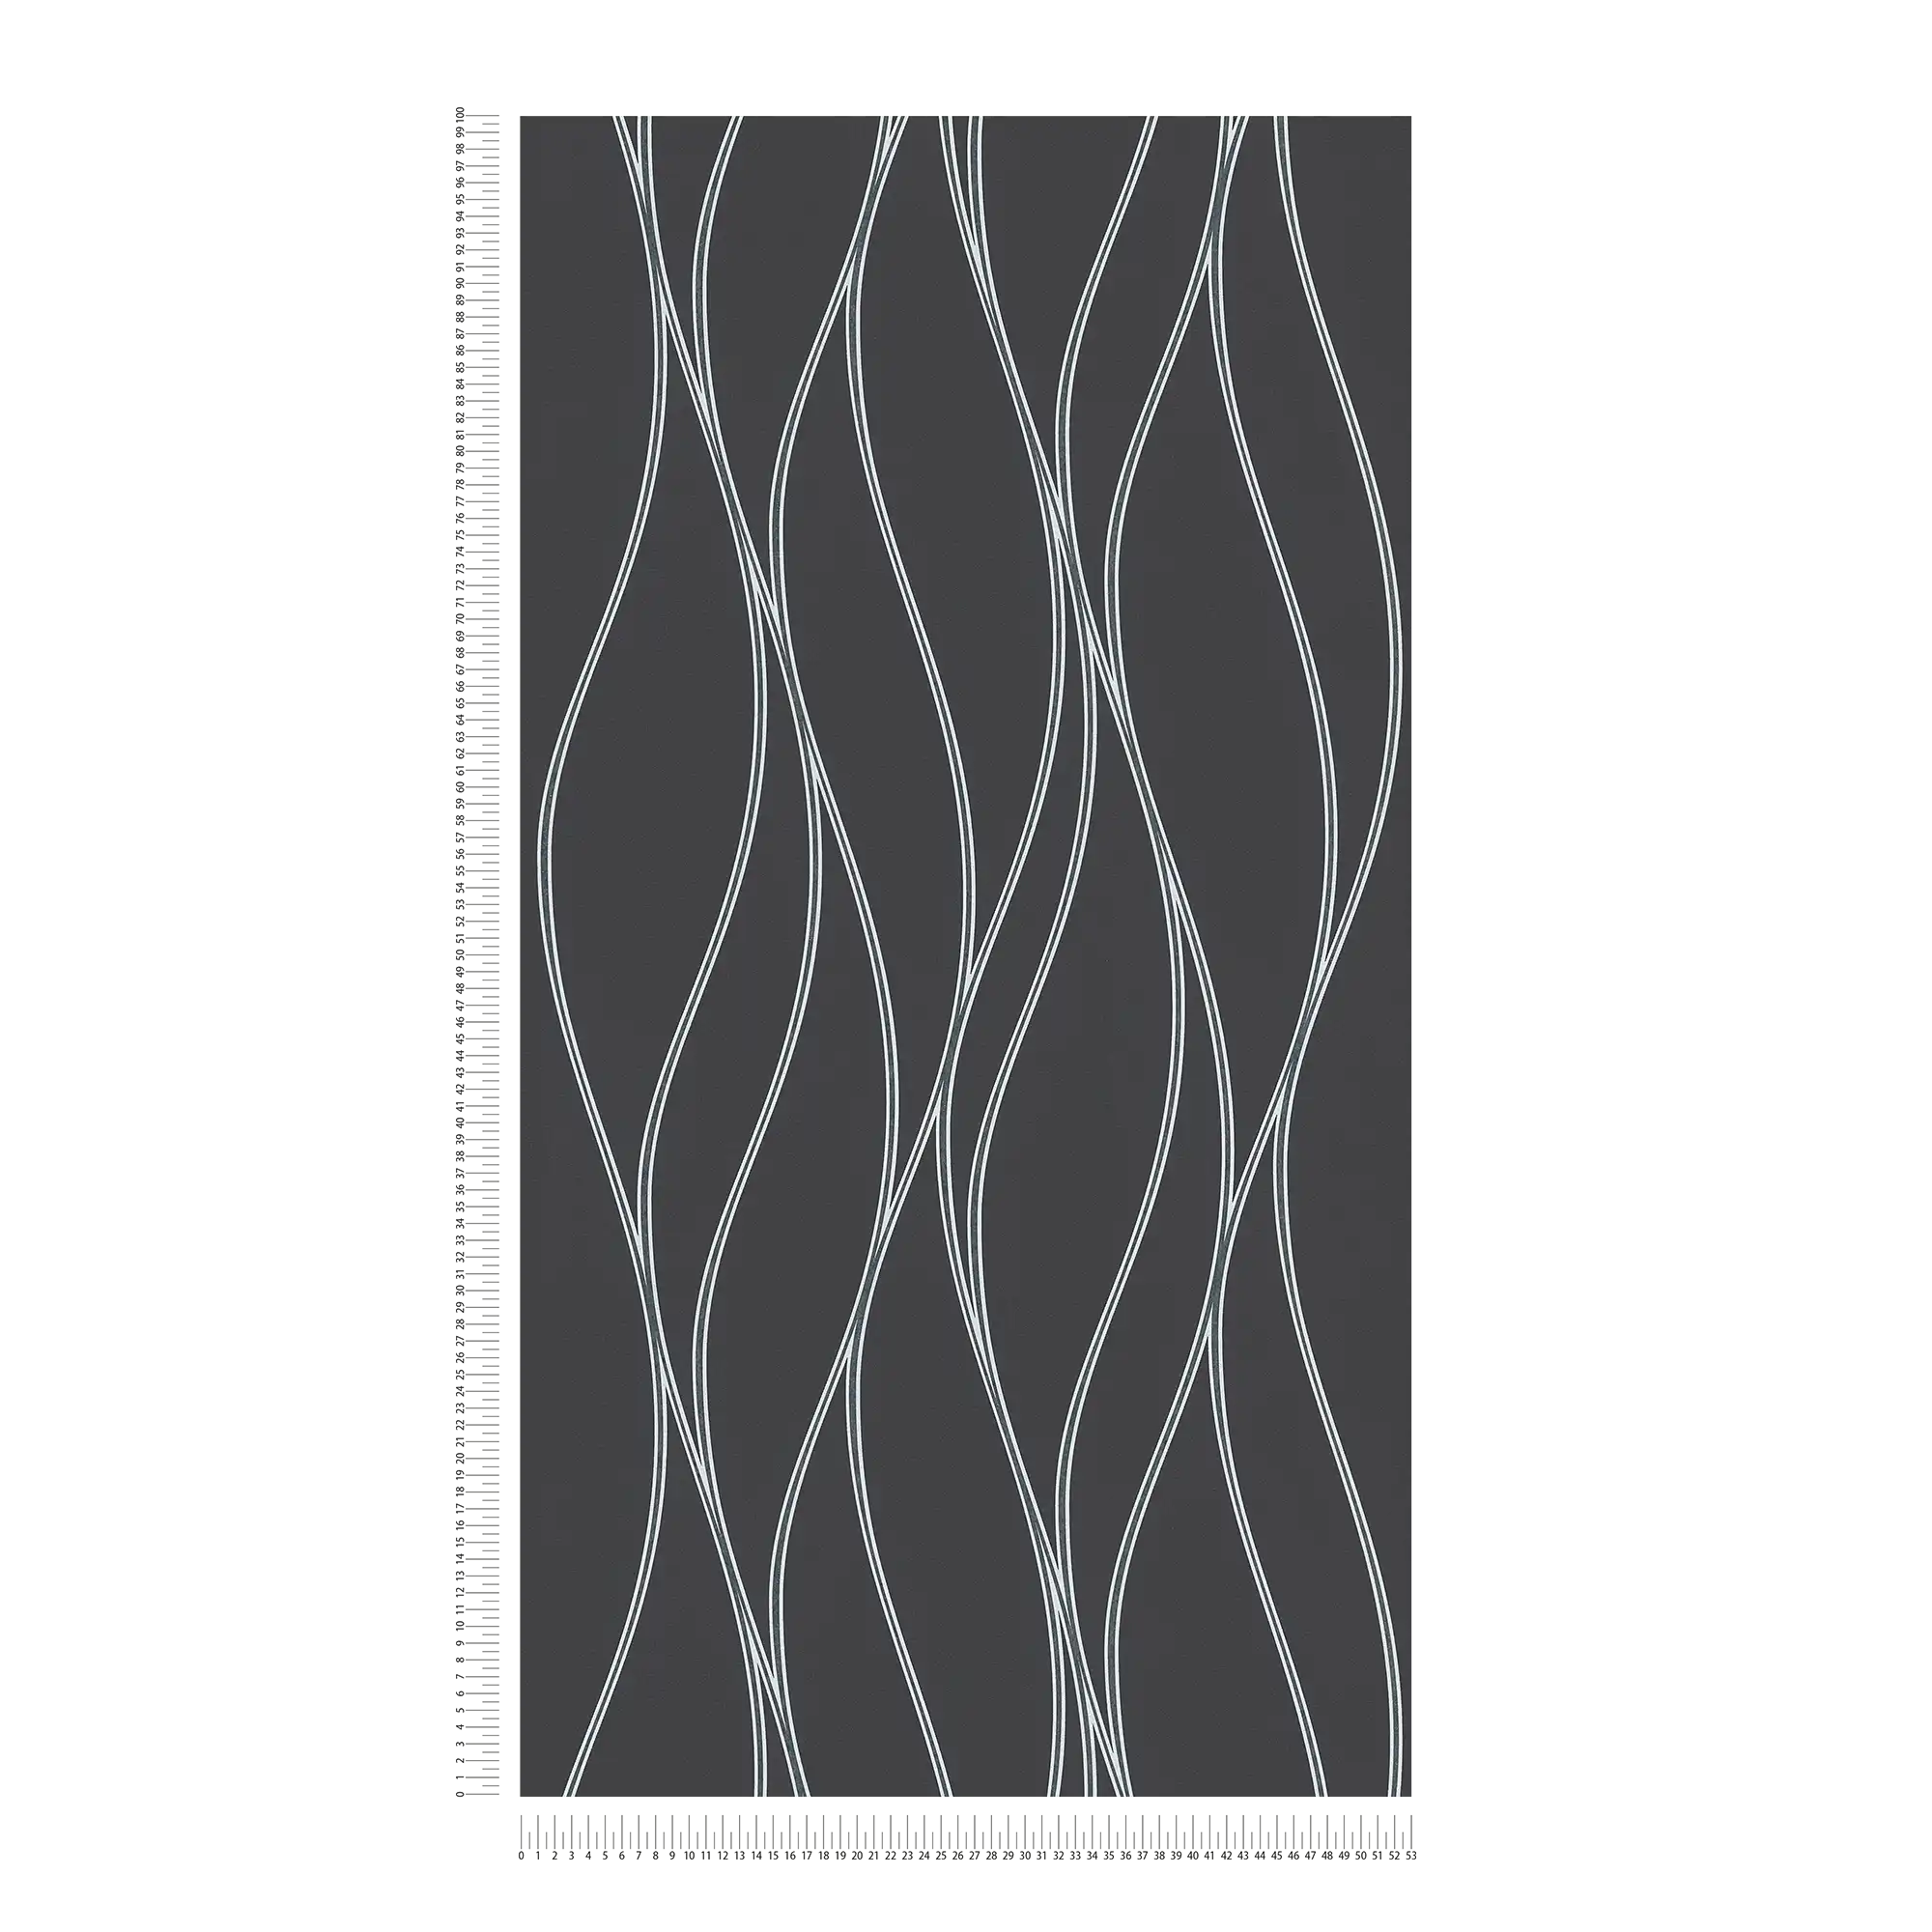             papel pintado líneas onduladas verticales, efecto metálico - negro, plata, gris
        